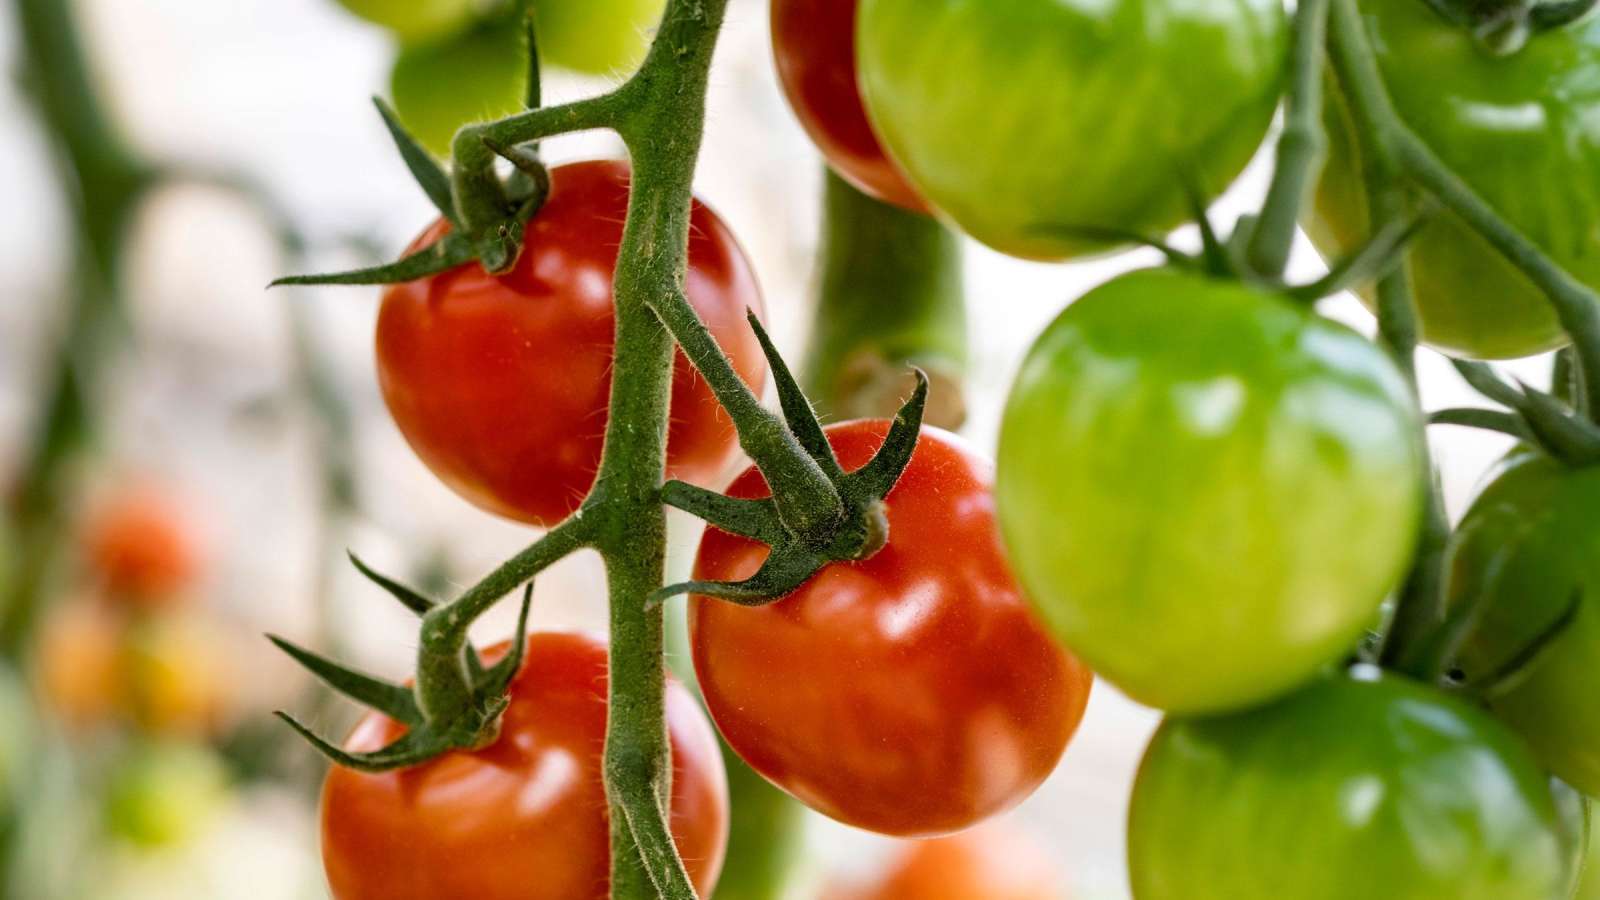 Maailmassa on yli 7000 tomaattilajiketta. Dunne-tomaattia viljellään Suomessa ainoastaan Närpiön Vihanneksella. 